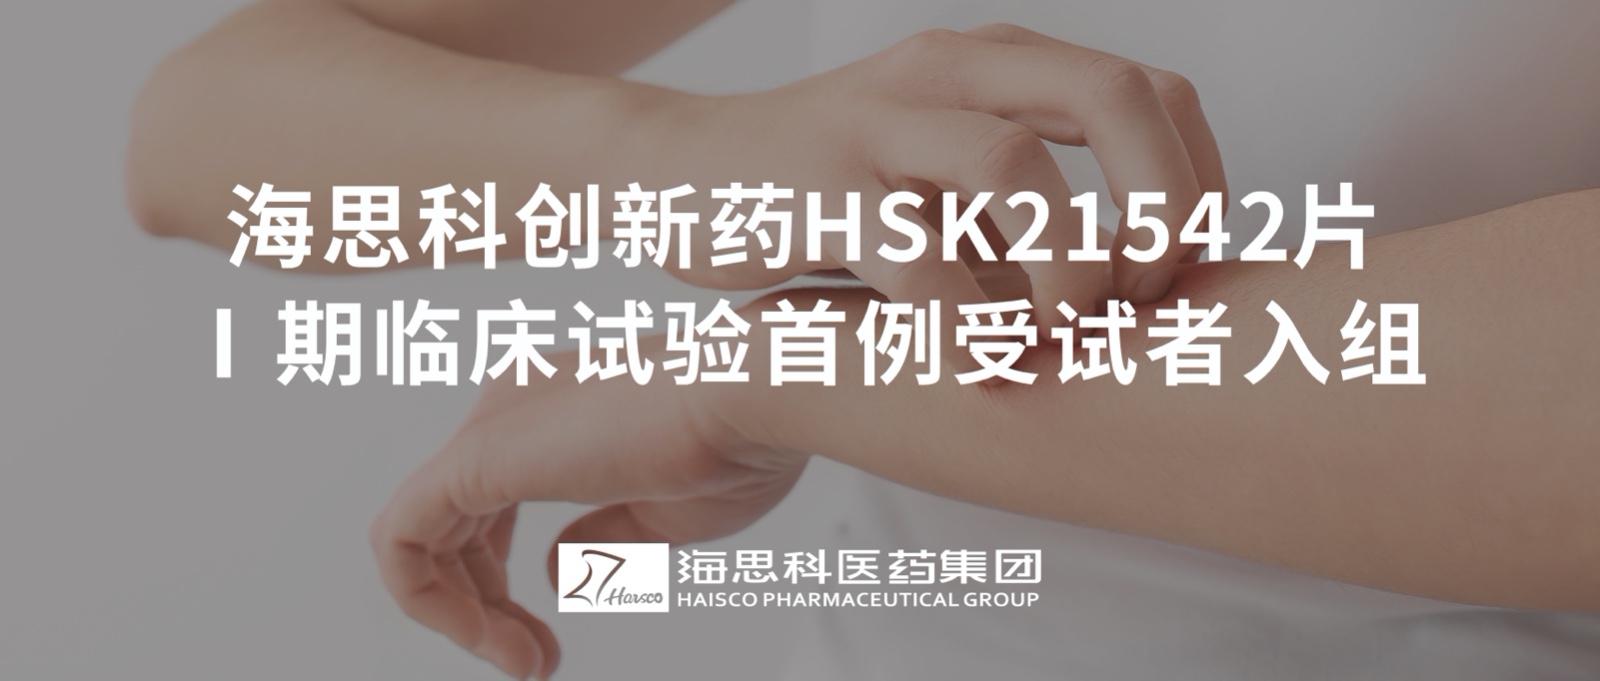 乐虎唯一官网创新药HSK21542片Ⅰ期临床试验首例受试者入组